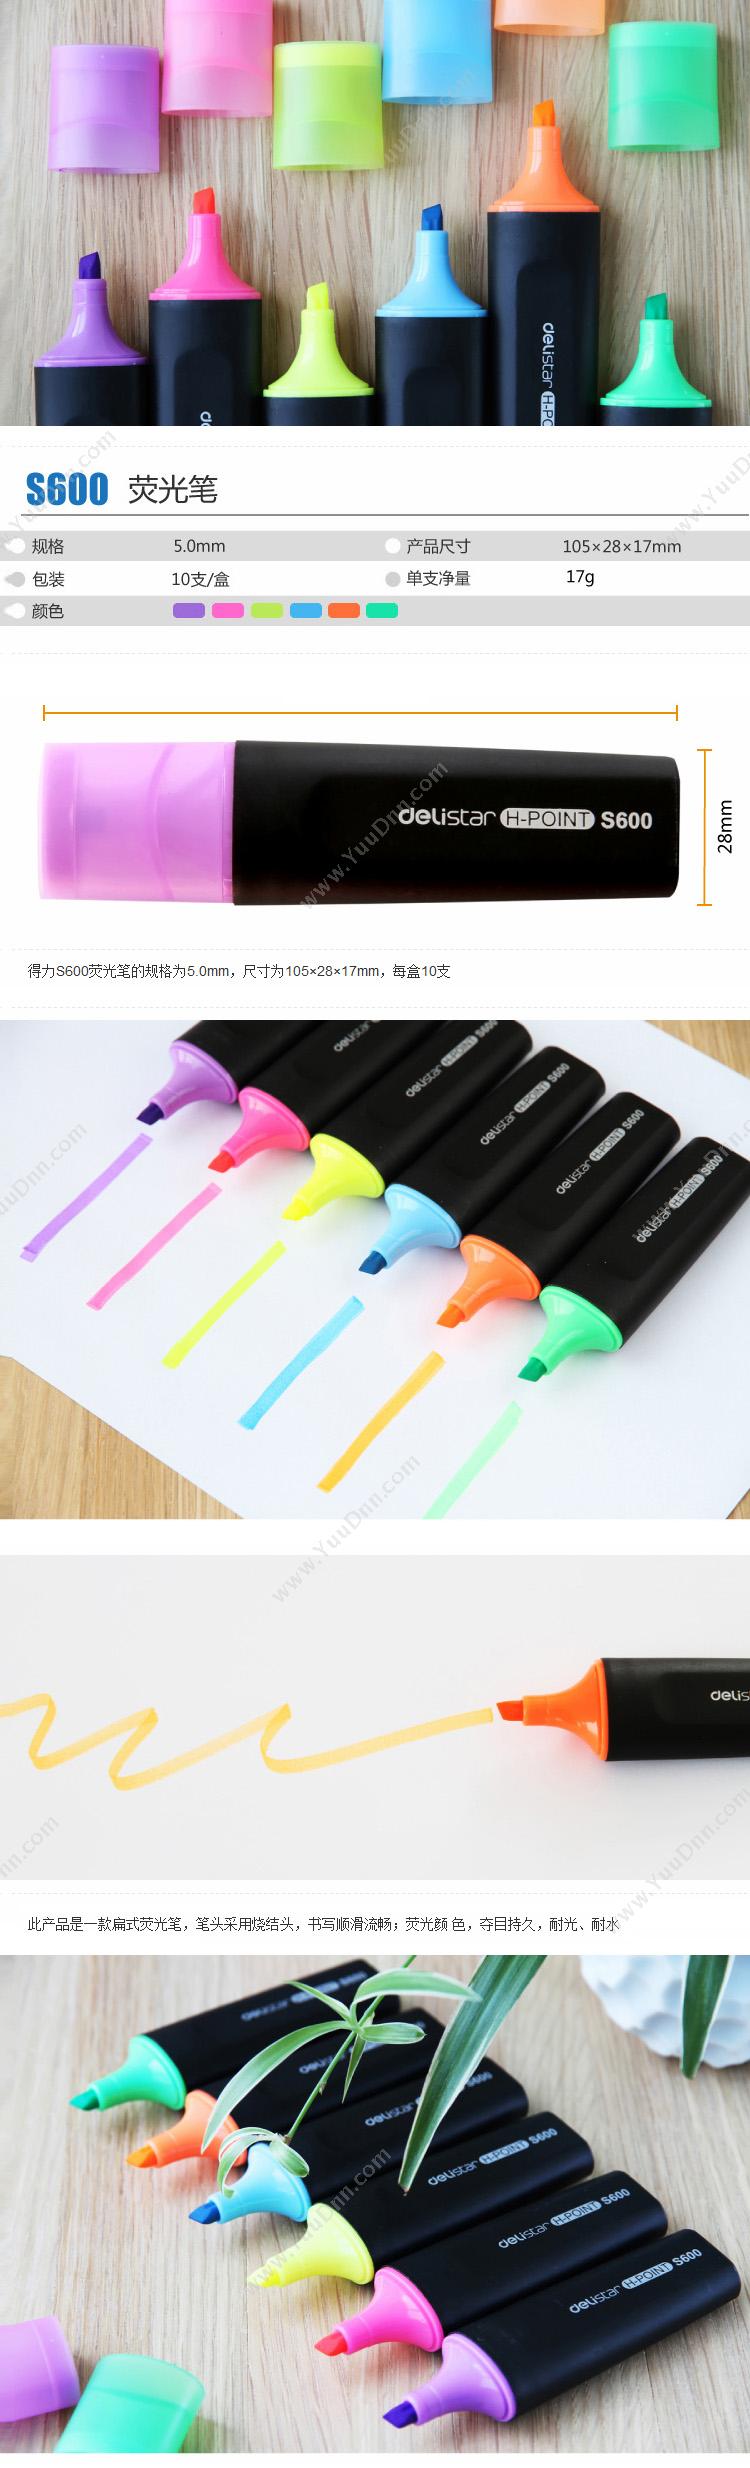 得力 Deli S600 标记醒目荧光笔 5mm 粉色 单头荧光笔